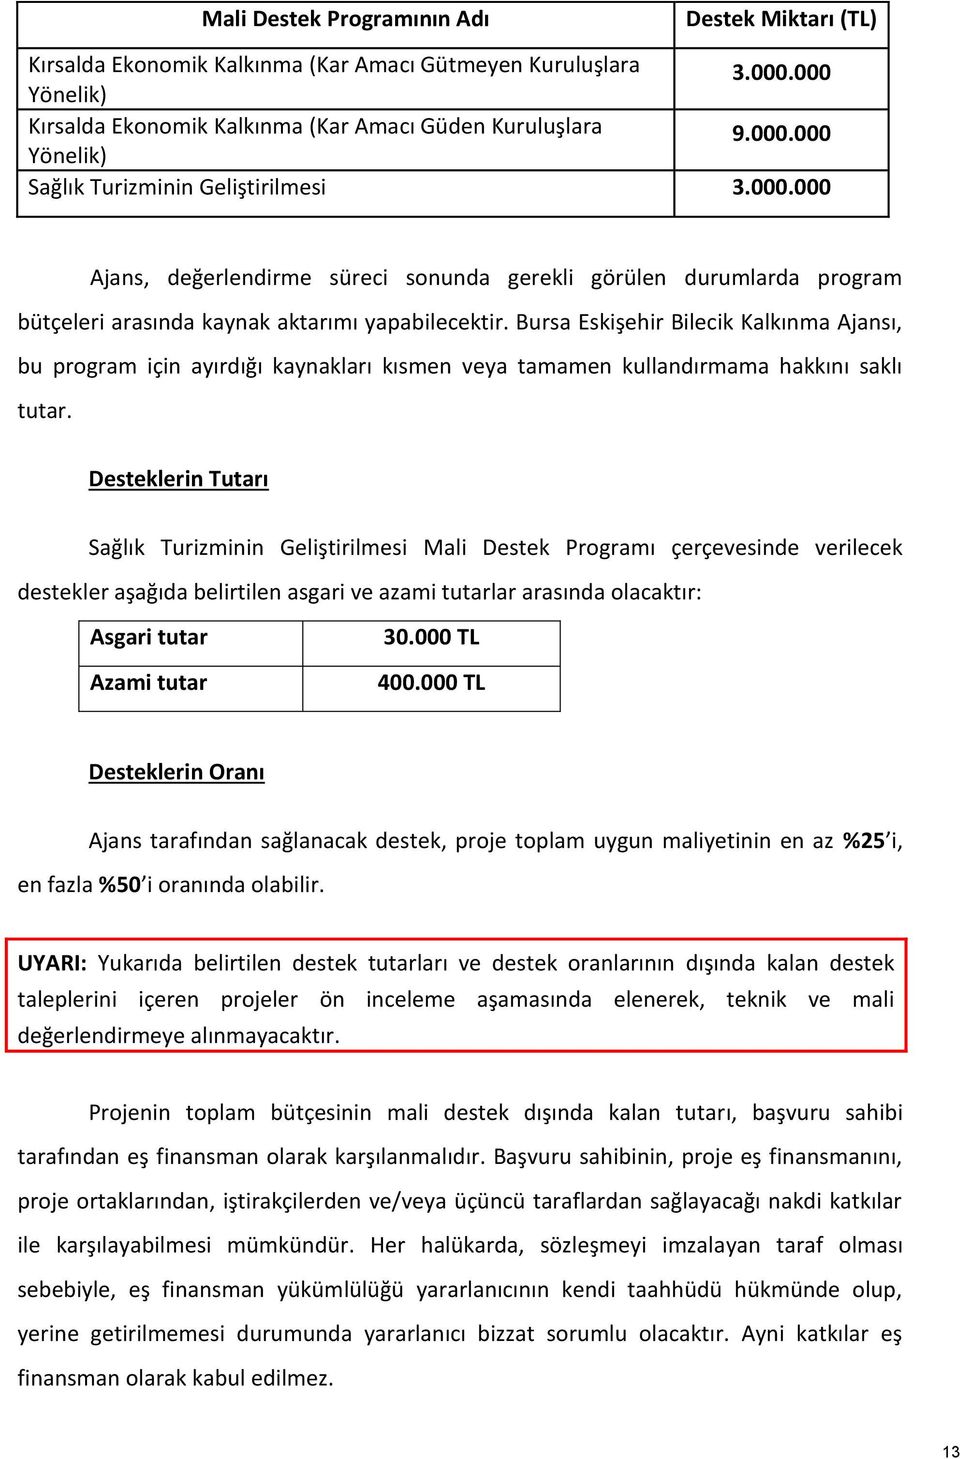 Bursa Eskişehir Bilecik Kalkınma Ajansı, bu program için ayırdığı kaynakları kısmen veya tamamen kullandırmama hakkını saklı tutar.